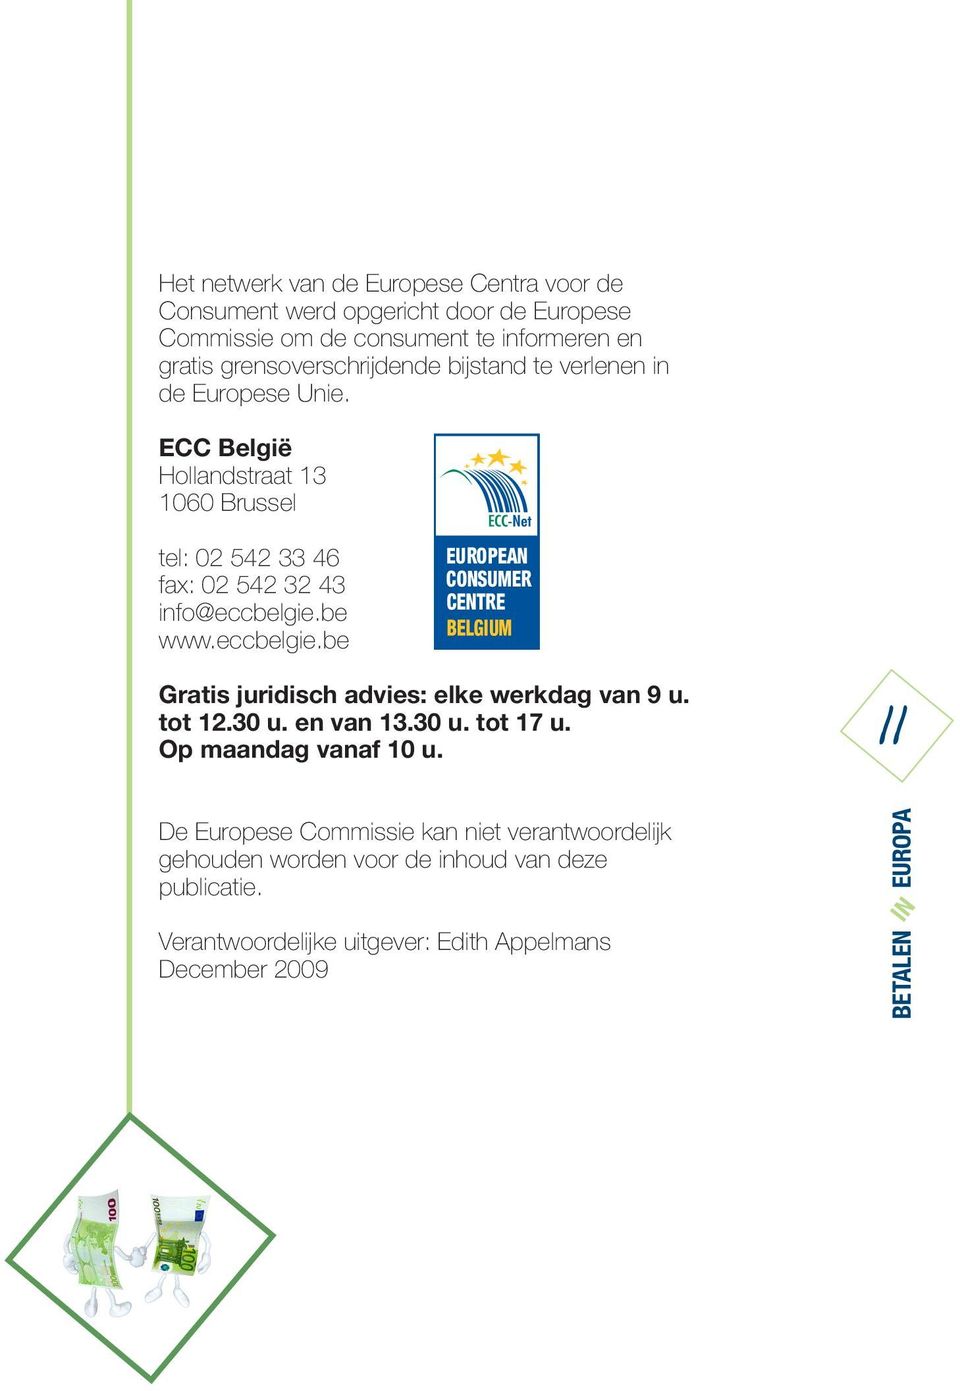 ECC België Hollandstraat 13 1060 Brussel tel: 02 542 33 46 fax: 02 542 32 43 info@eccbelgie.be www.eccbelgie.be Gratis juridisch advies: elke werkdag van 9 u.